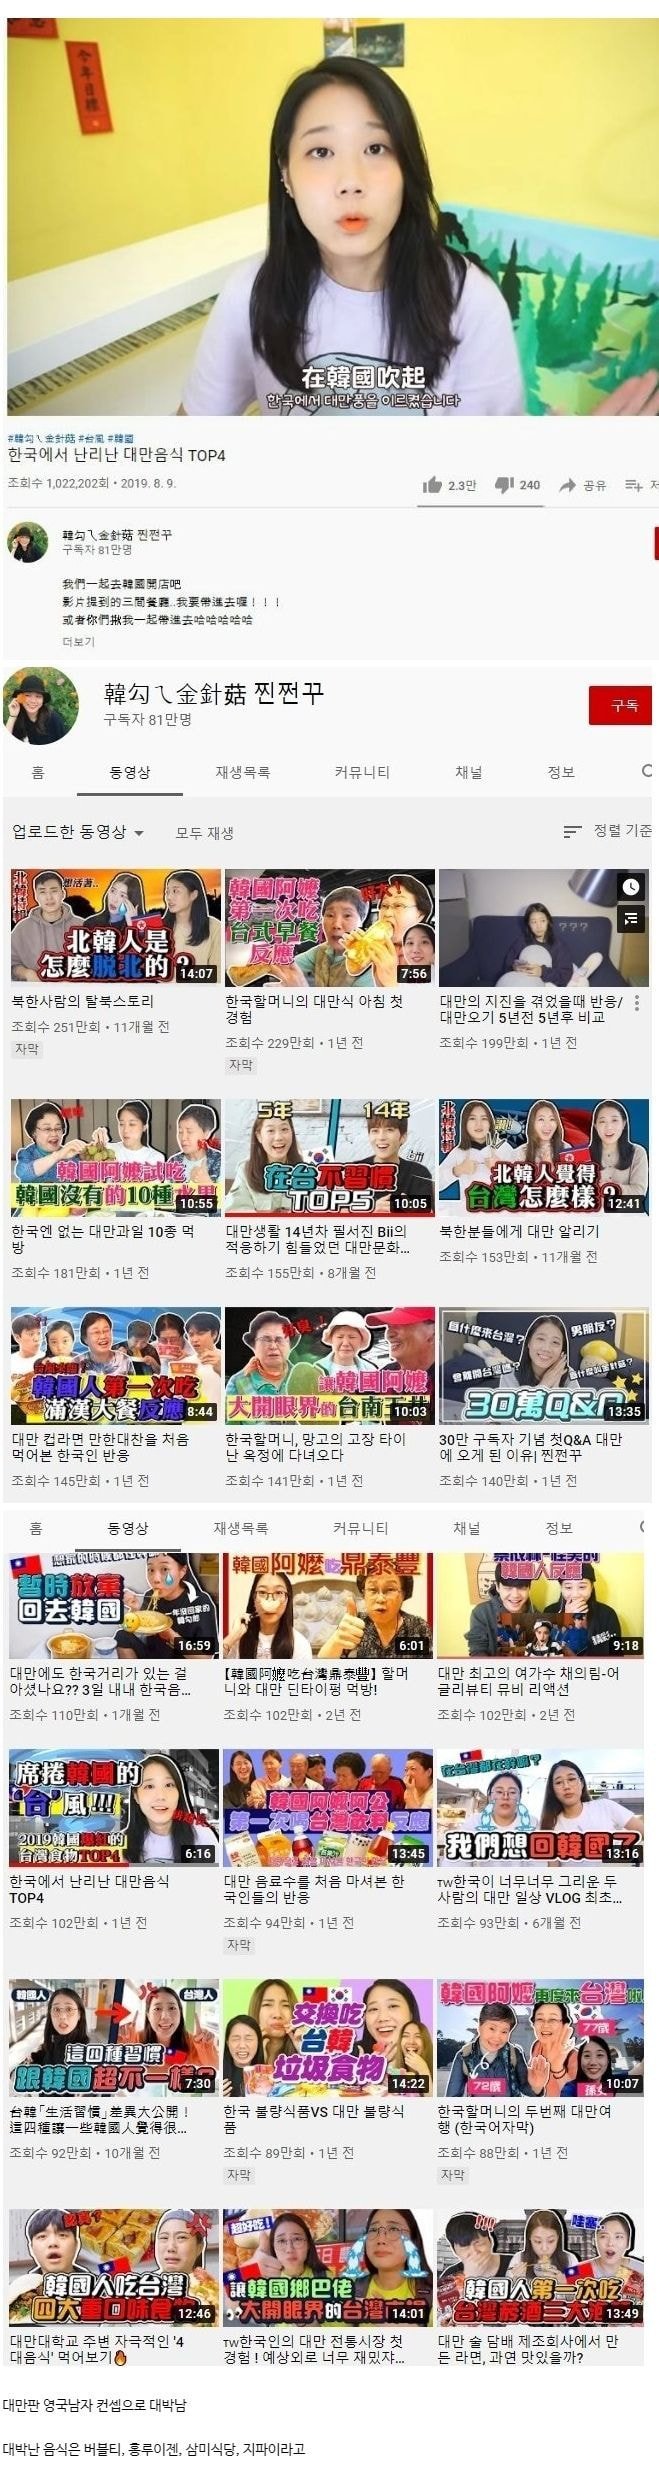 대만에서 대박난 한국 유튜버.jpg